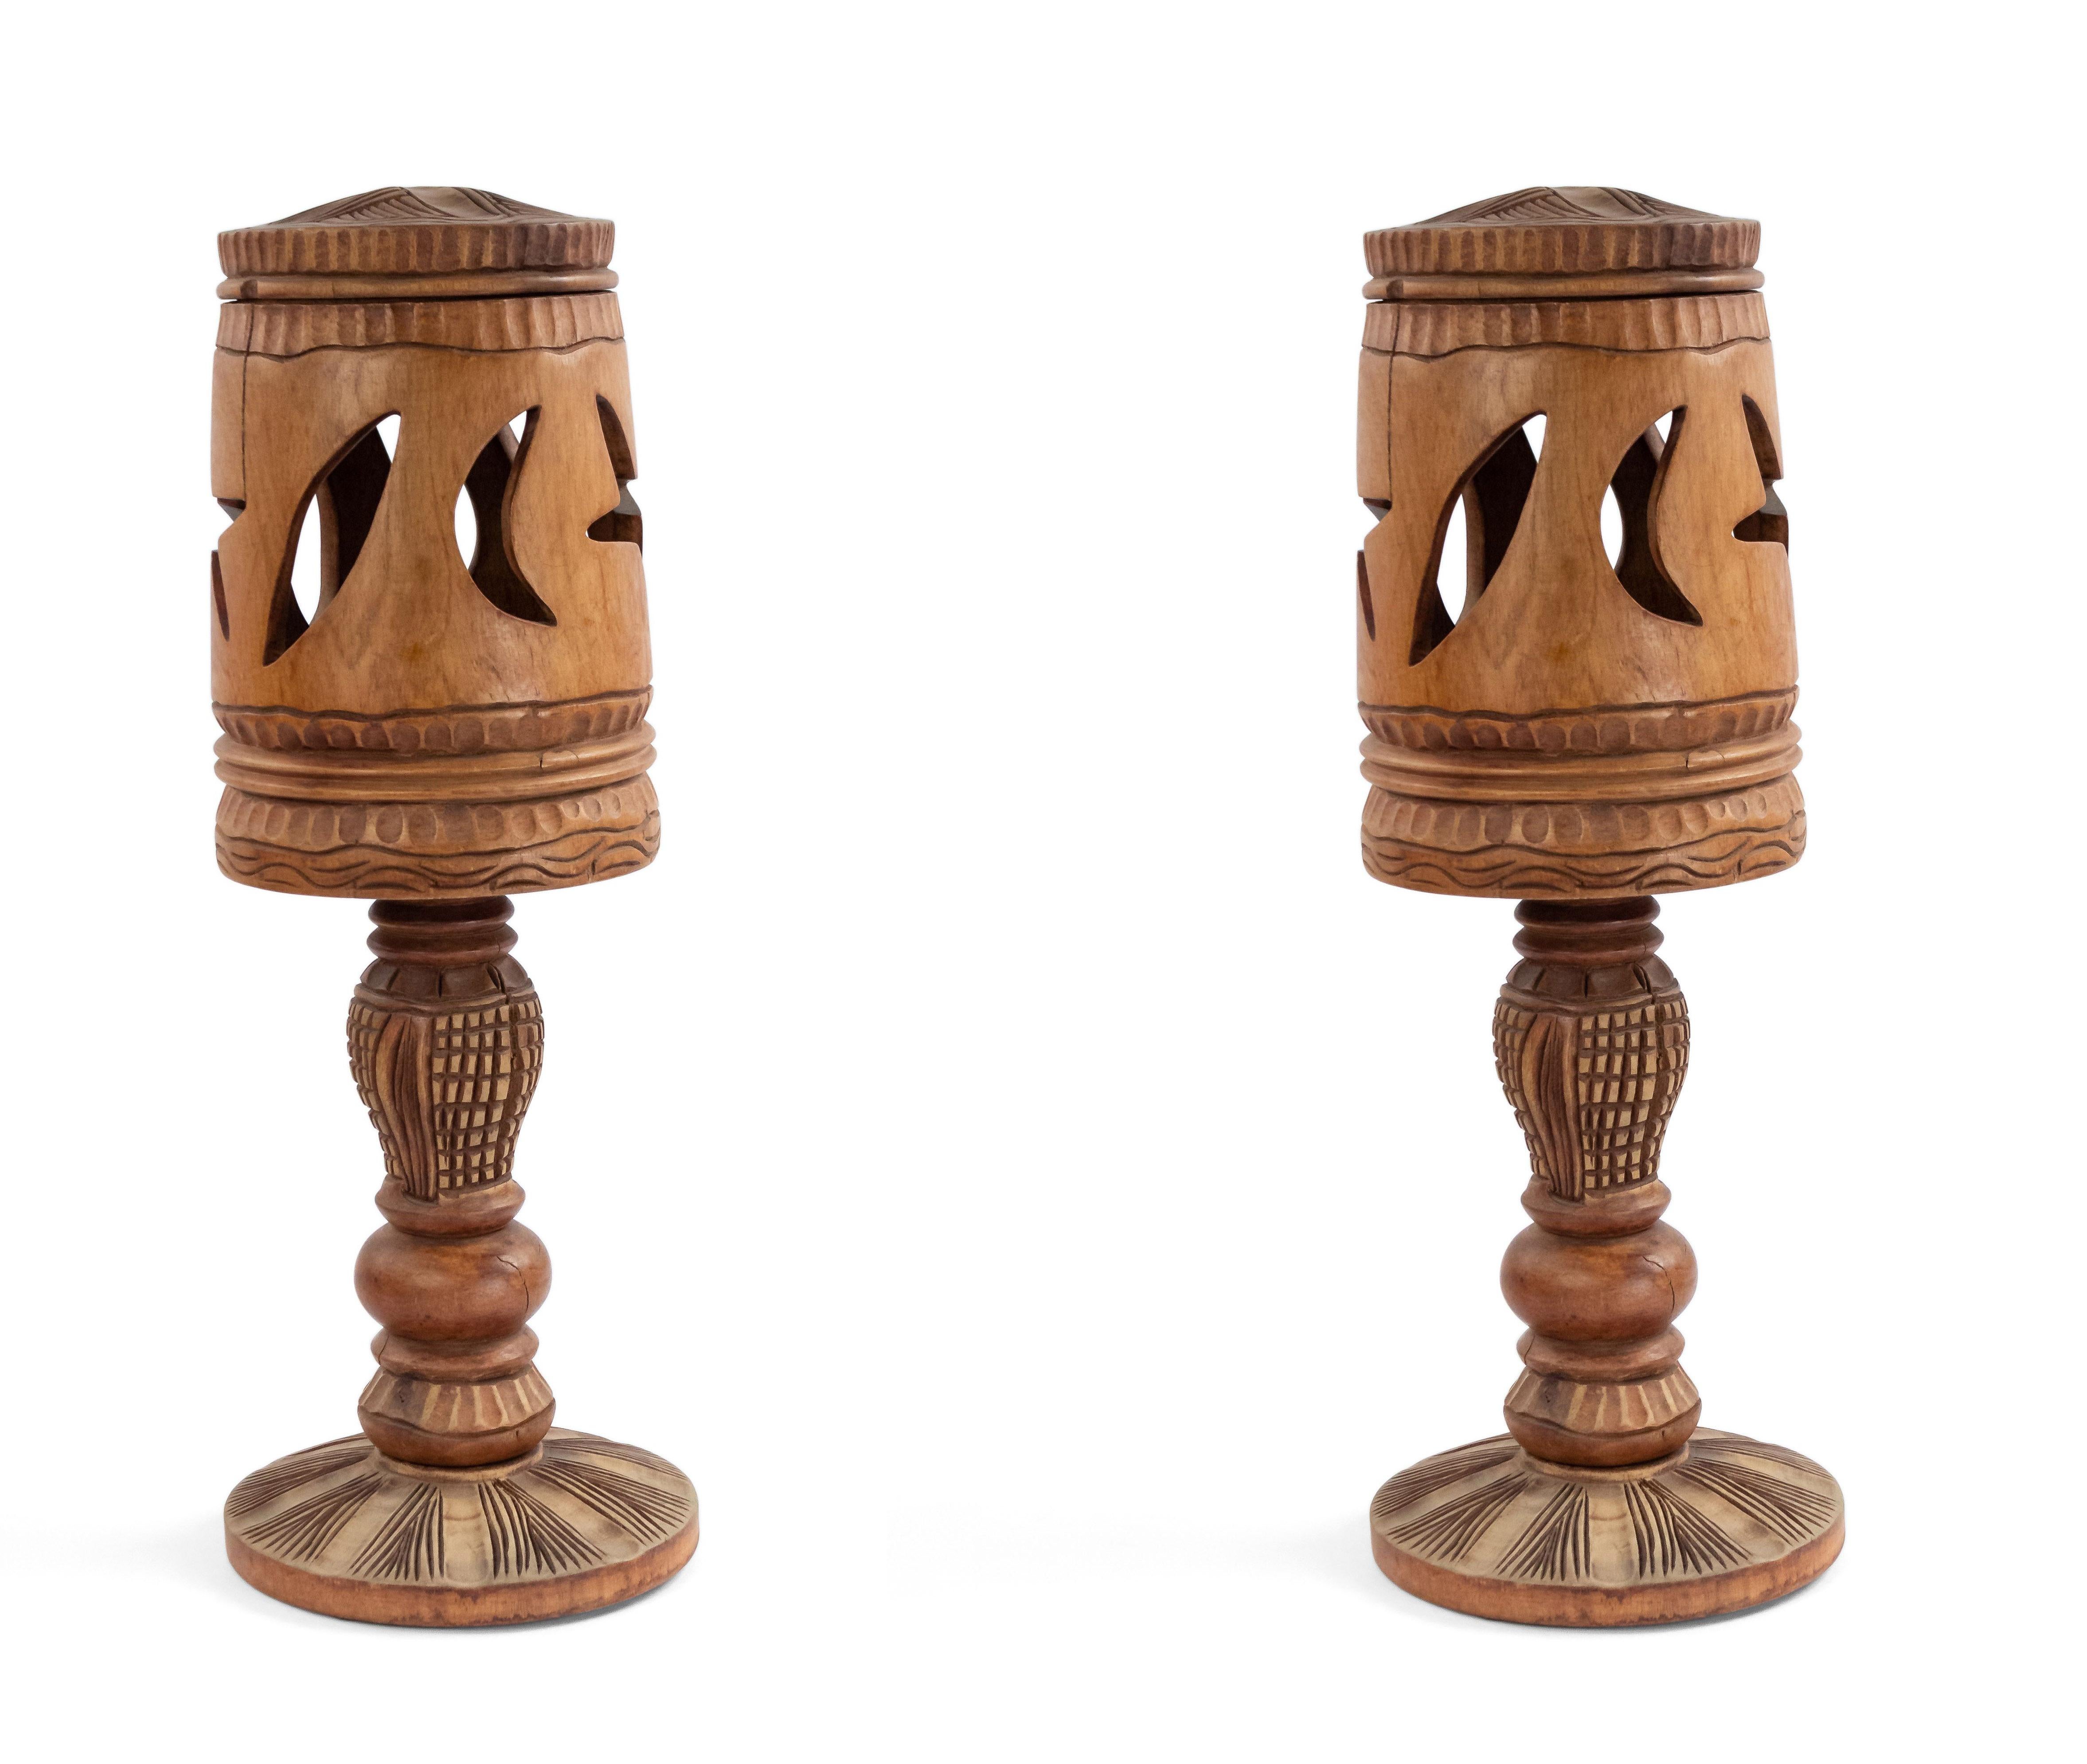 Paire de lampes de table (trois sections) en bois léger de style rustique américain Adirondack (années 1930, peut-être haïtien) avec abat-jour sculpté en forme de lune et d'étoile sous un couvercle.
 